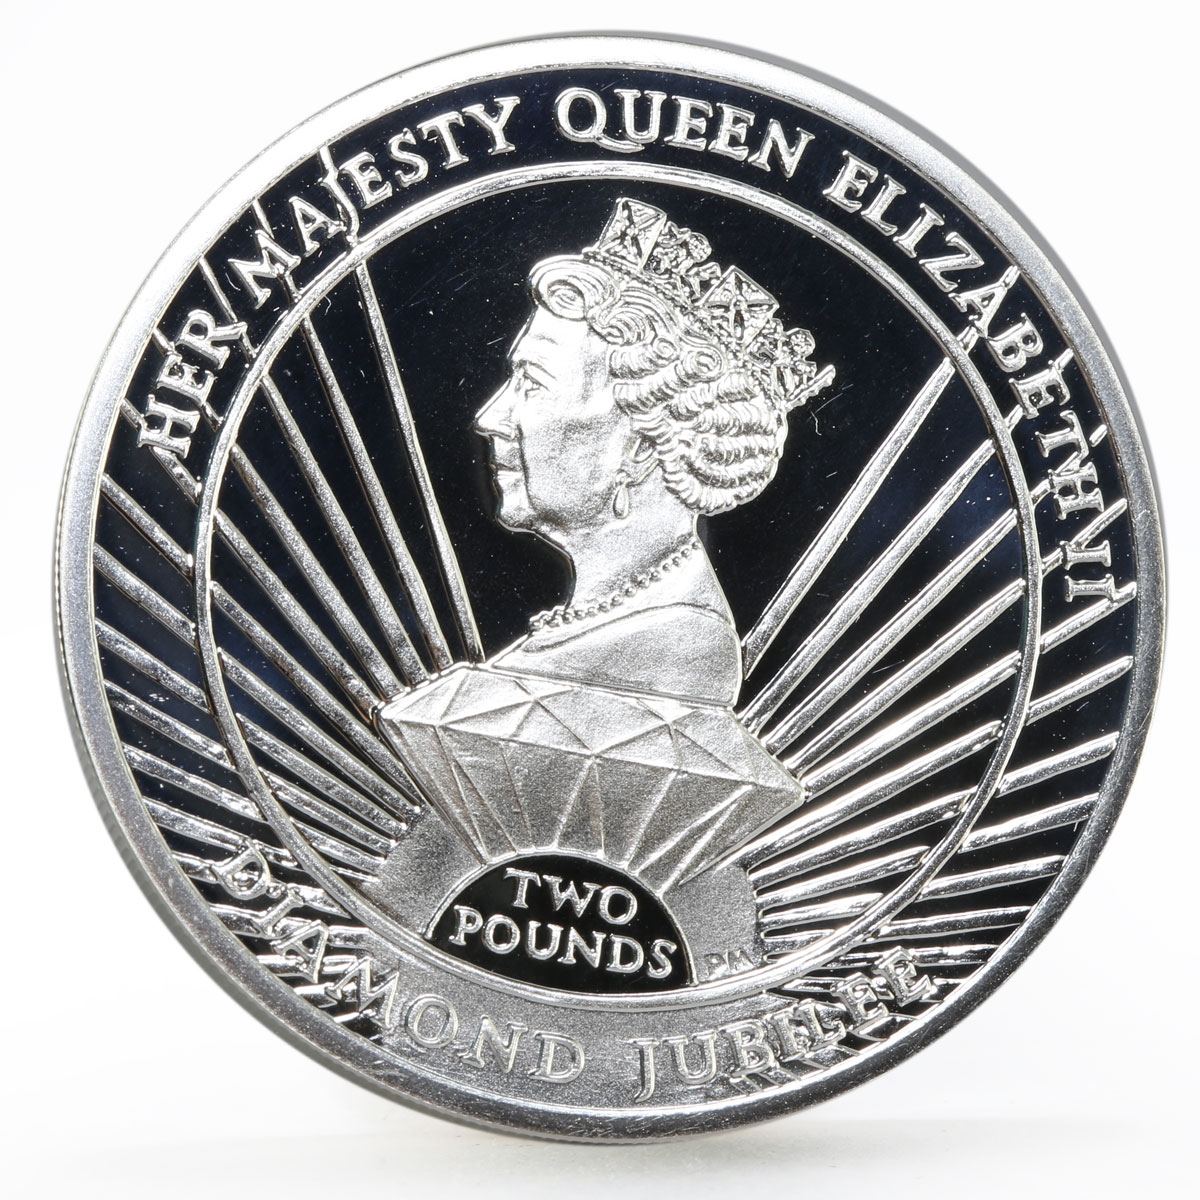 Sandwich Islands 2 pounds Diamond Jubilee of Queen Elizabeth II silver coin 2012